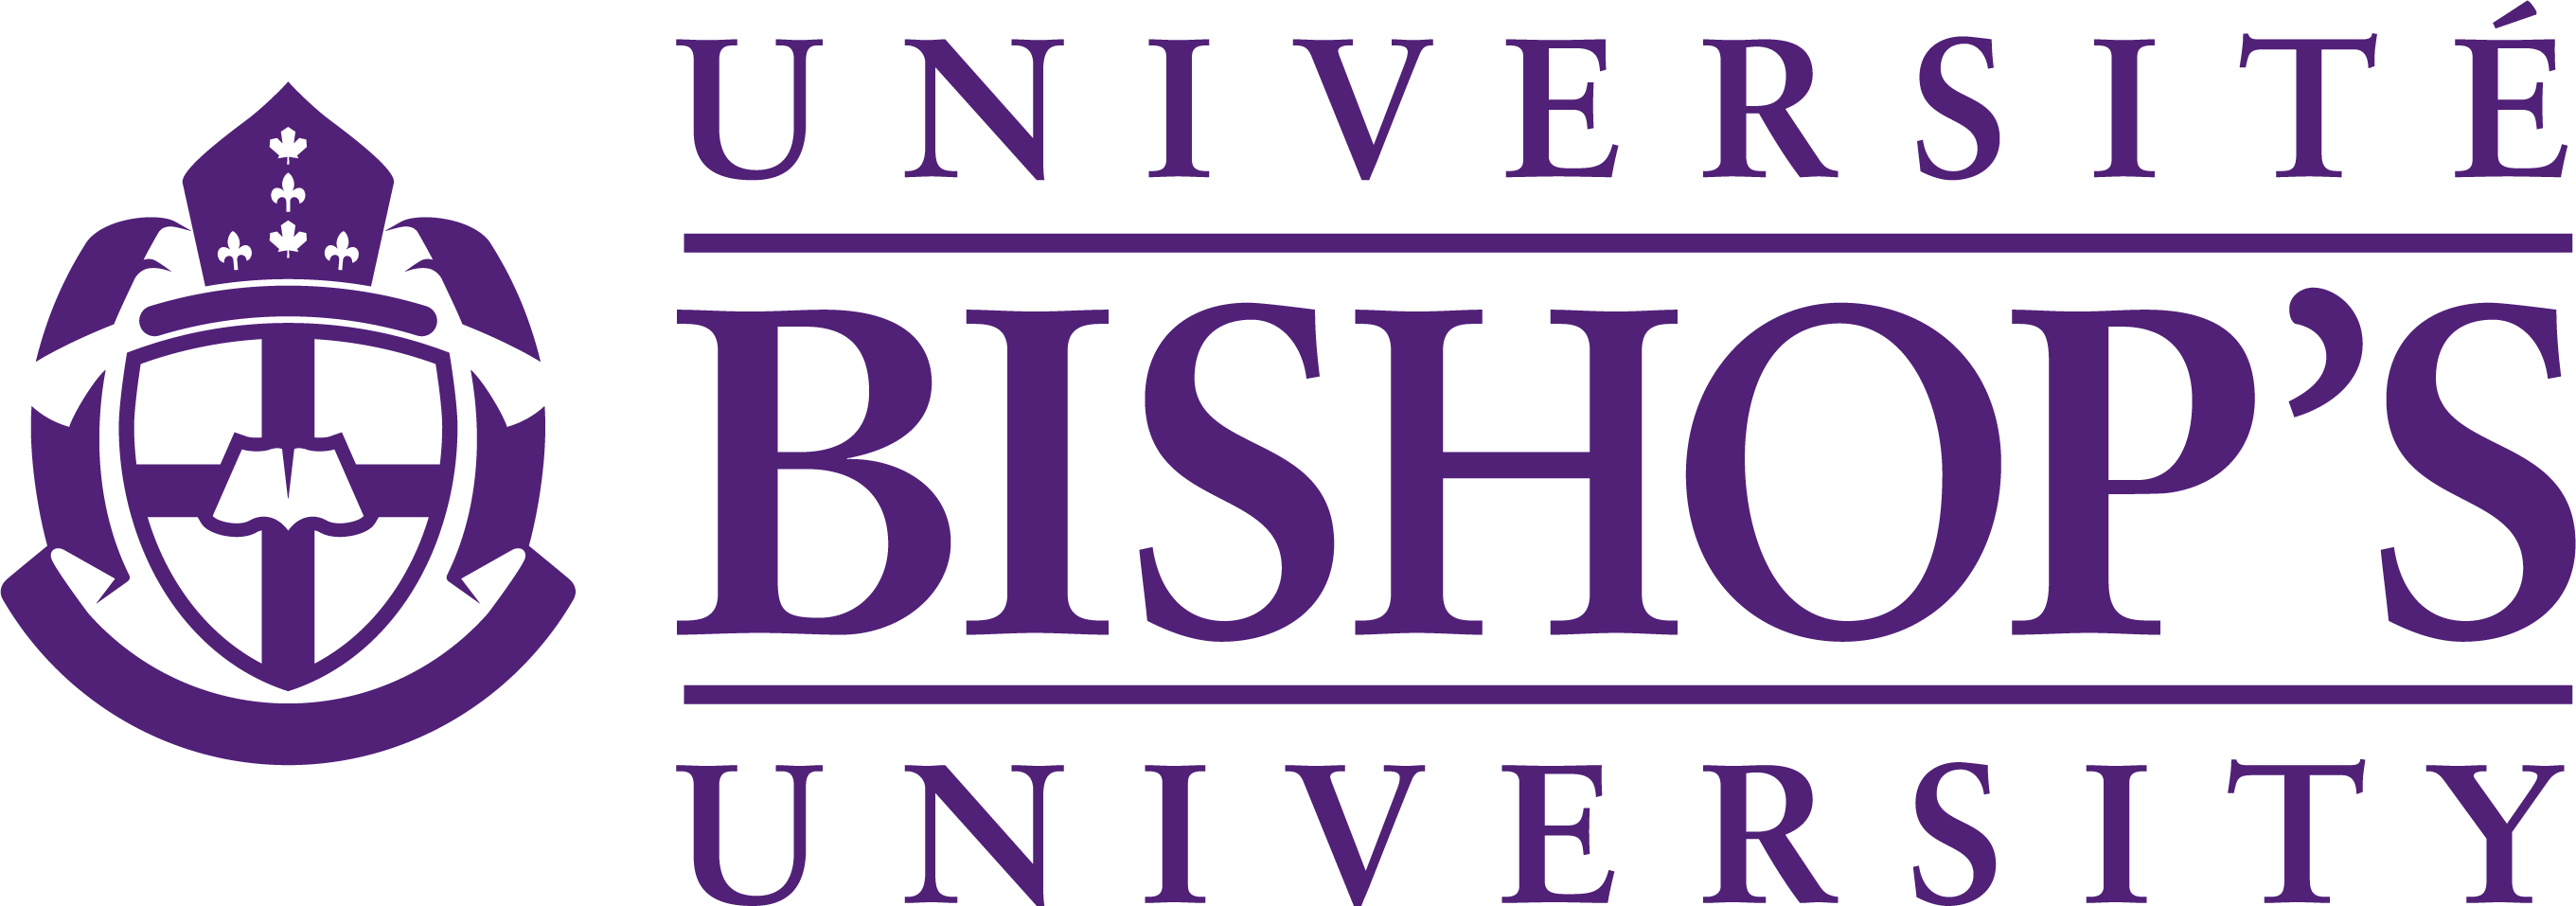 Bishops University #110